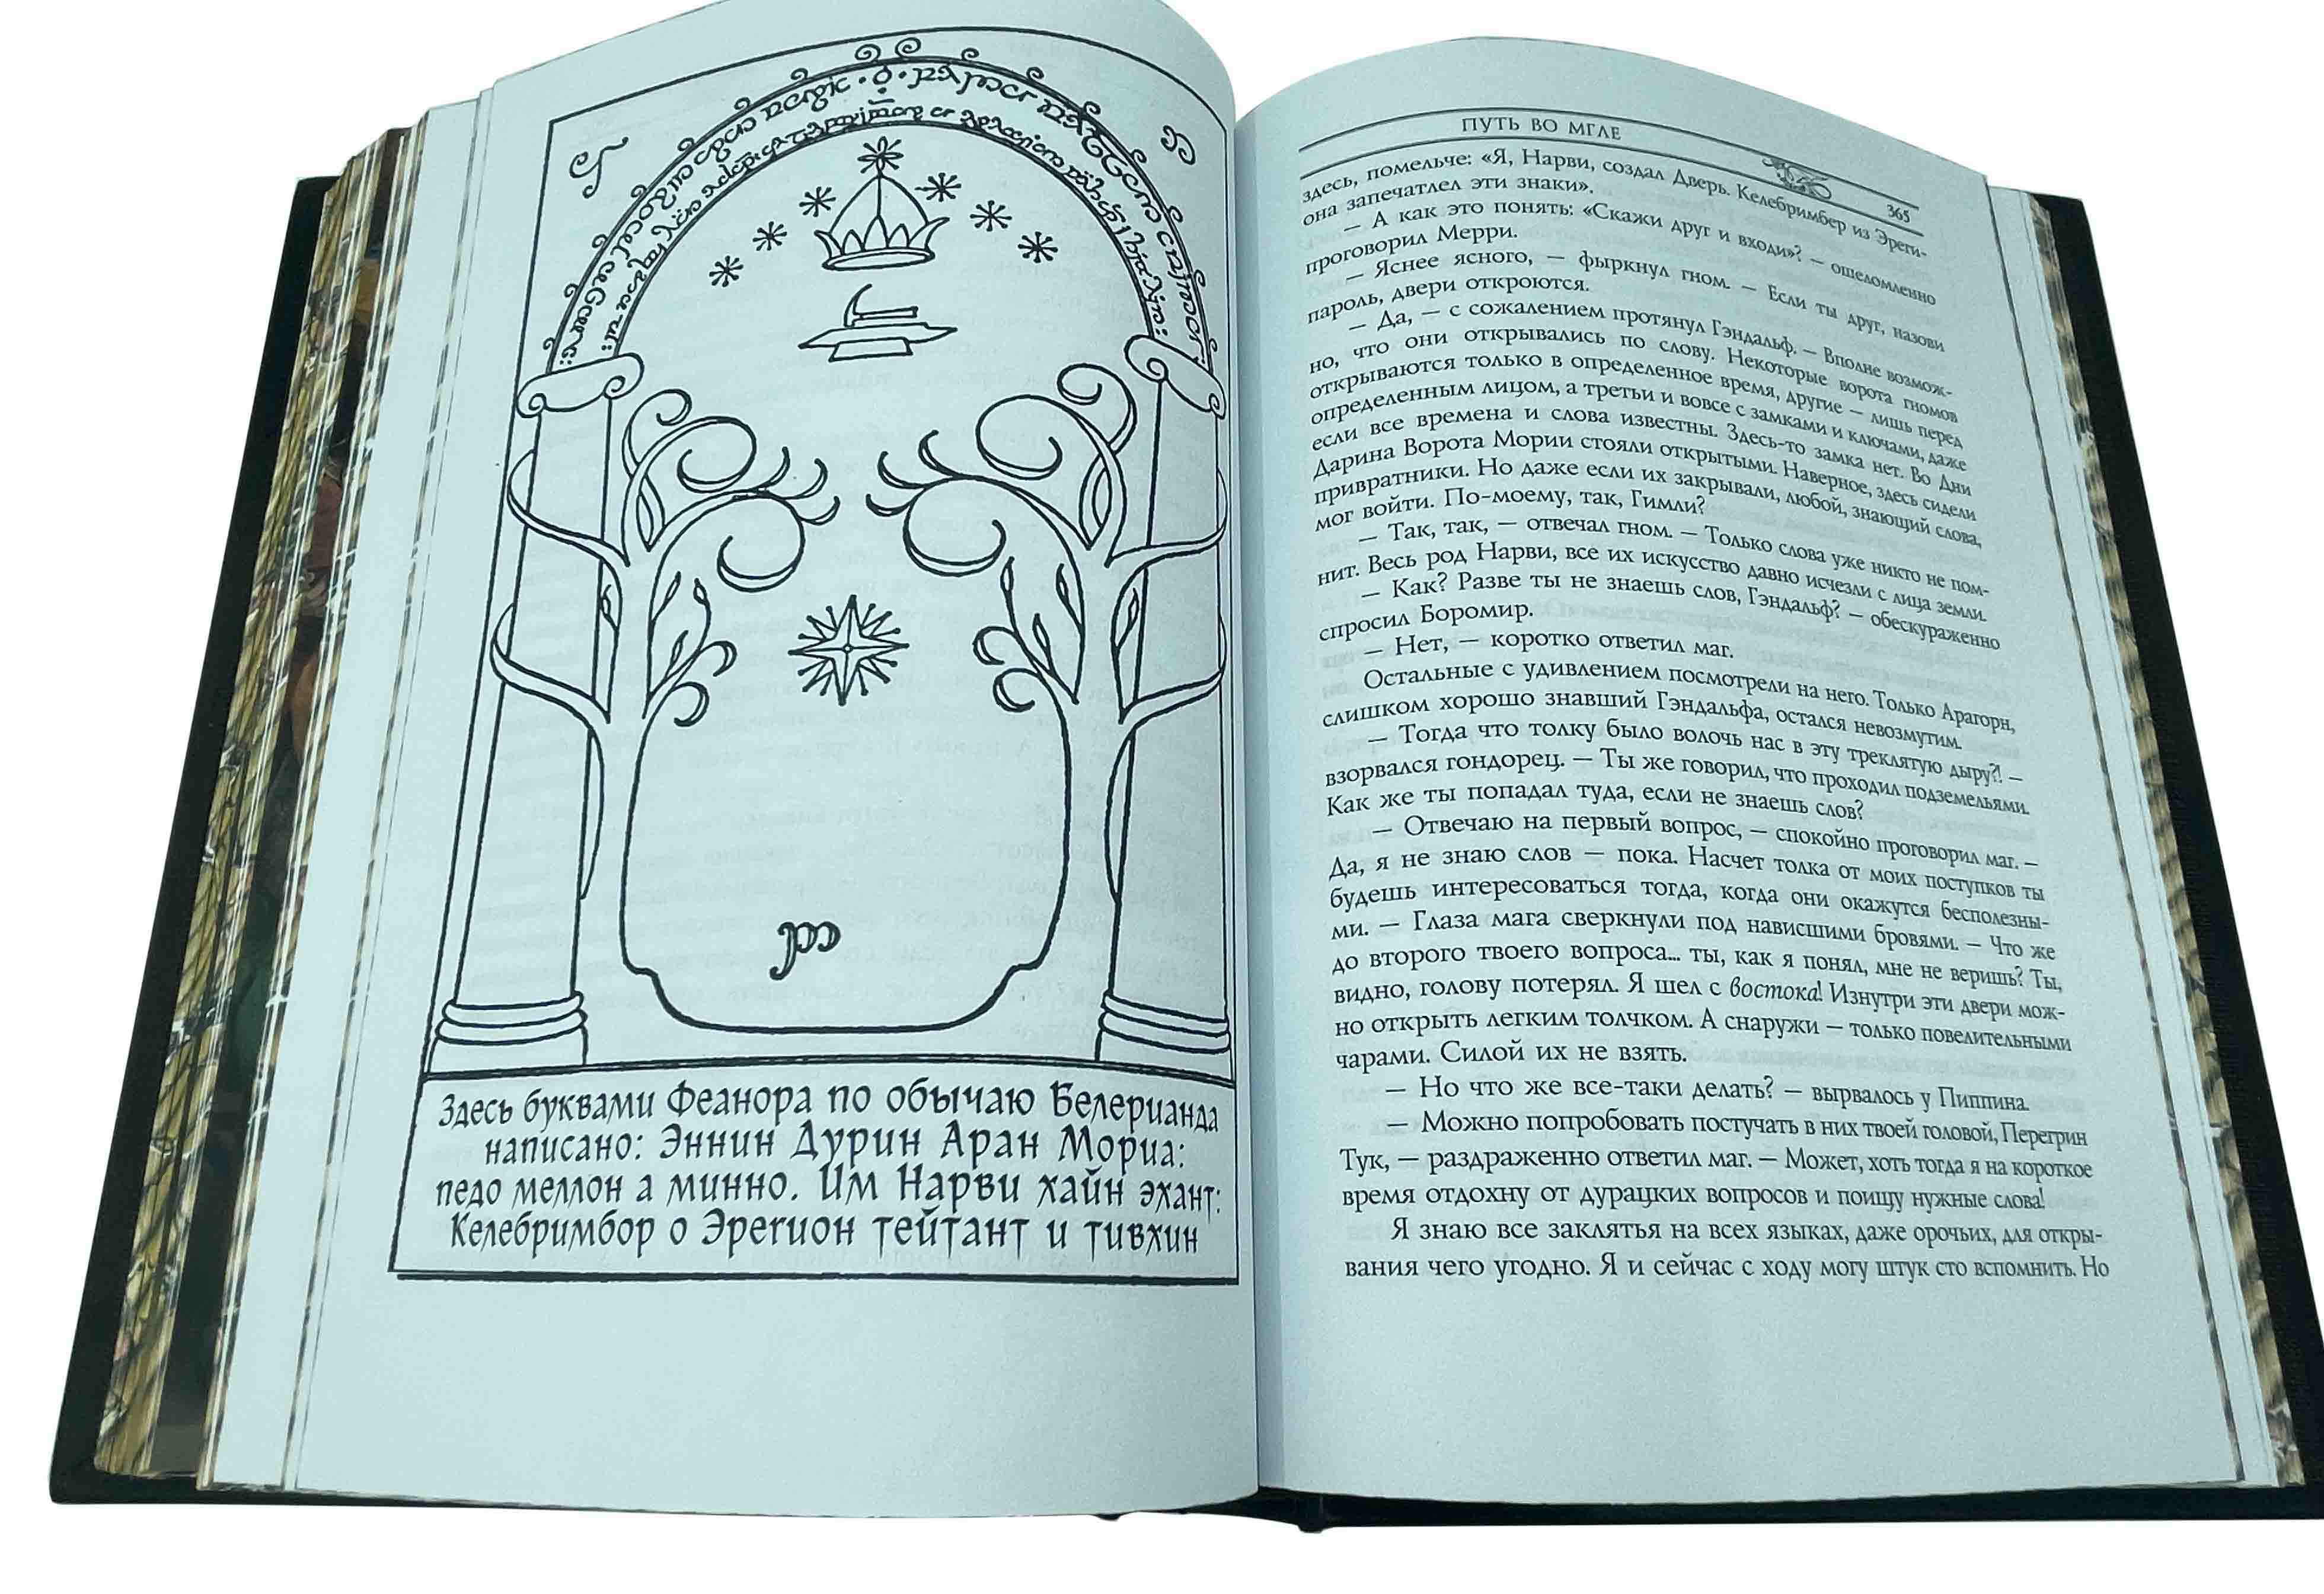 Полное собрание сочинений Дж. Р. Р. Толкина в 10 книгах